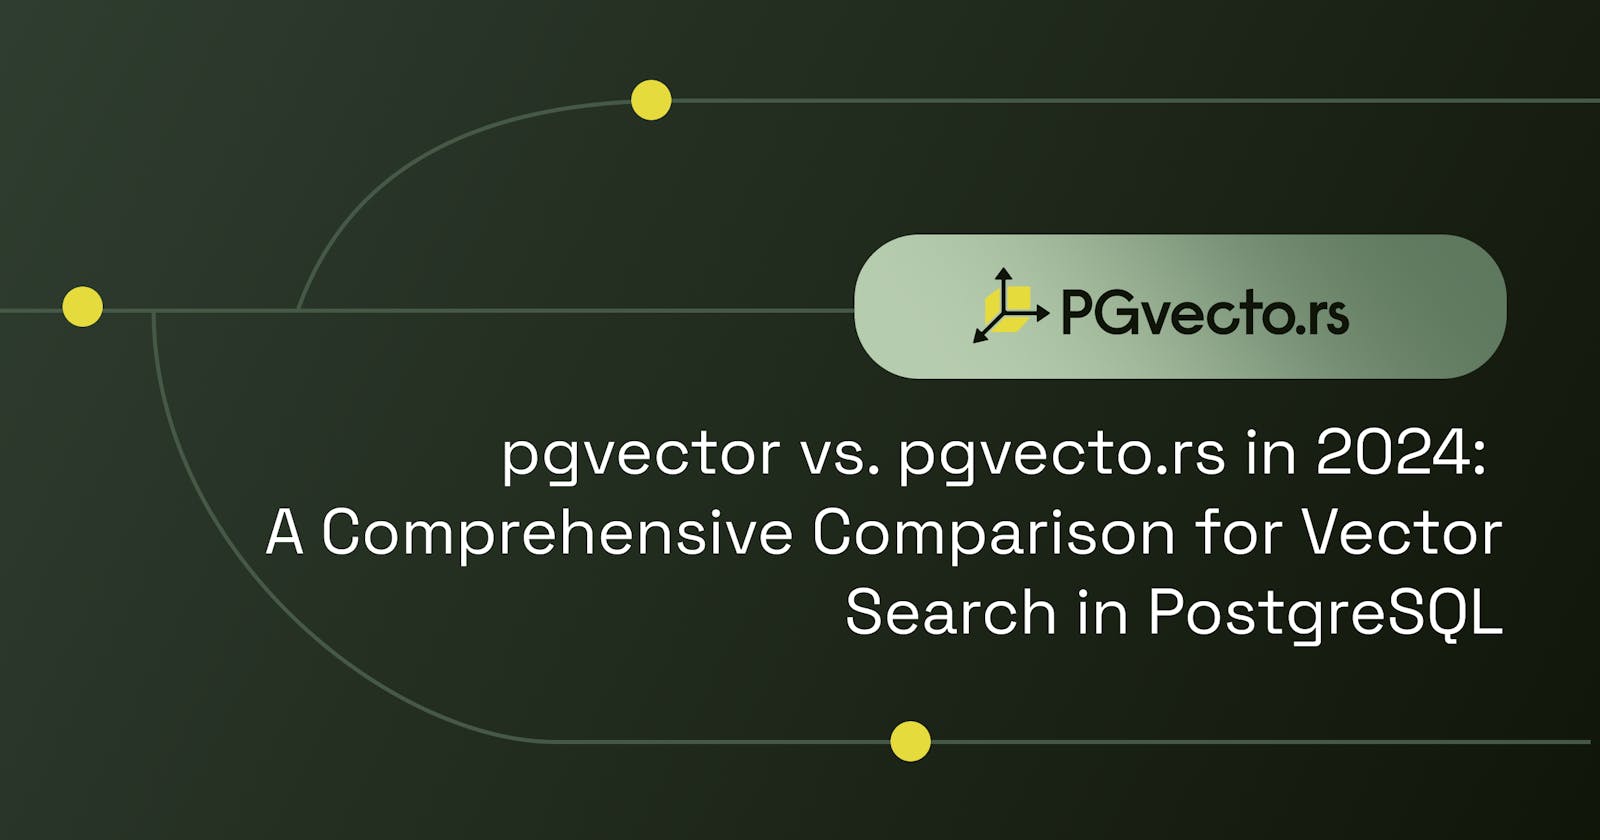 pgvector vs. pgvecto.rs in 2024: A Comprehensive Comparison for Vector Search in PostgreSQL